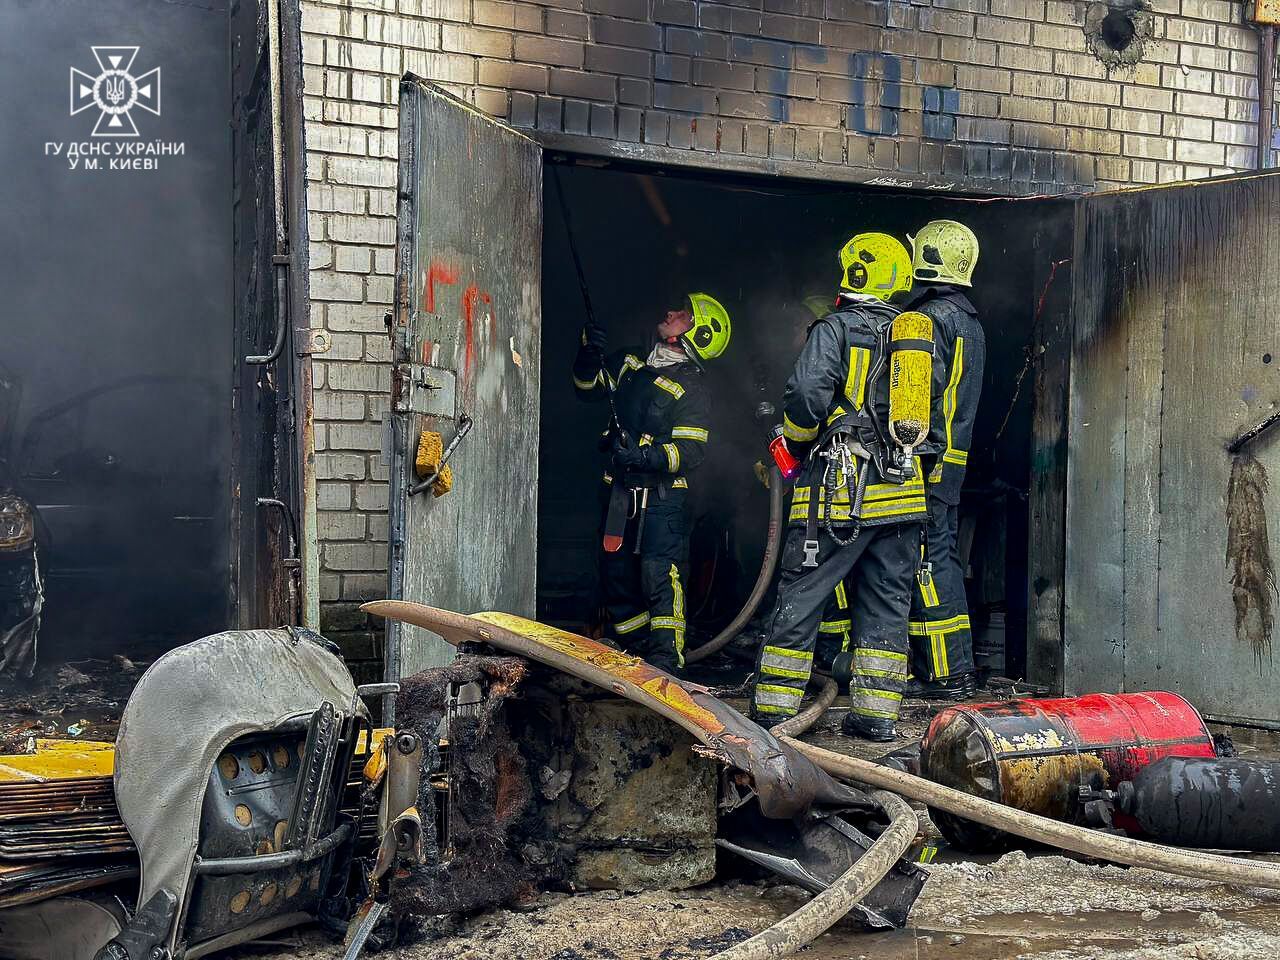 В Киеве на Троещине спасатели предотвратили взрыв во время пожара. Подробности и фото